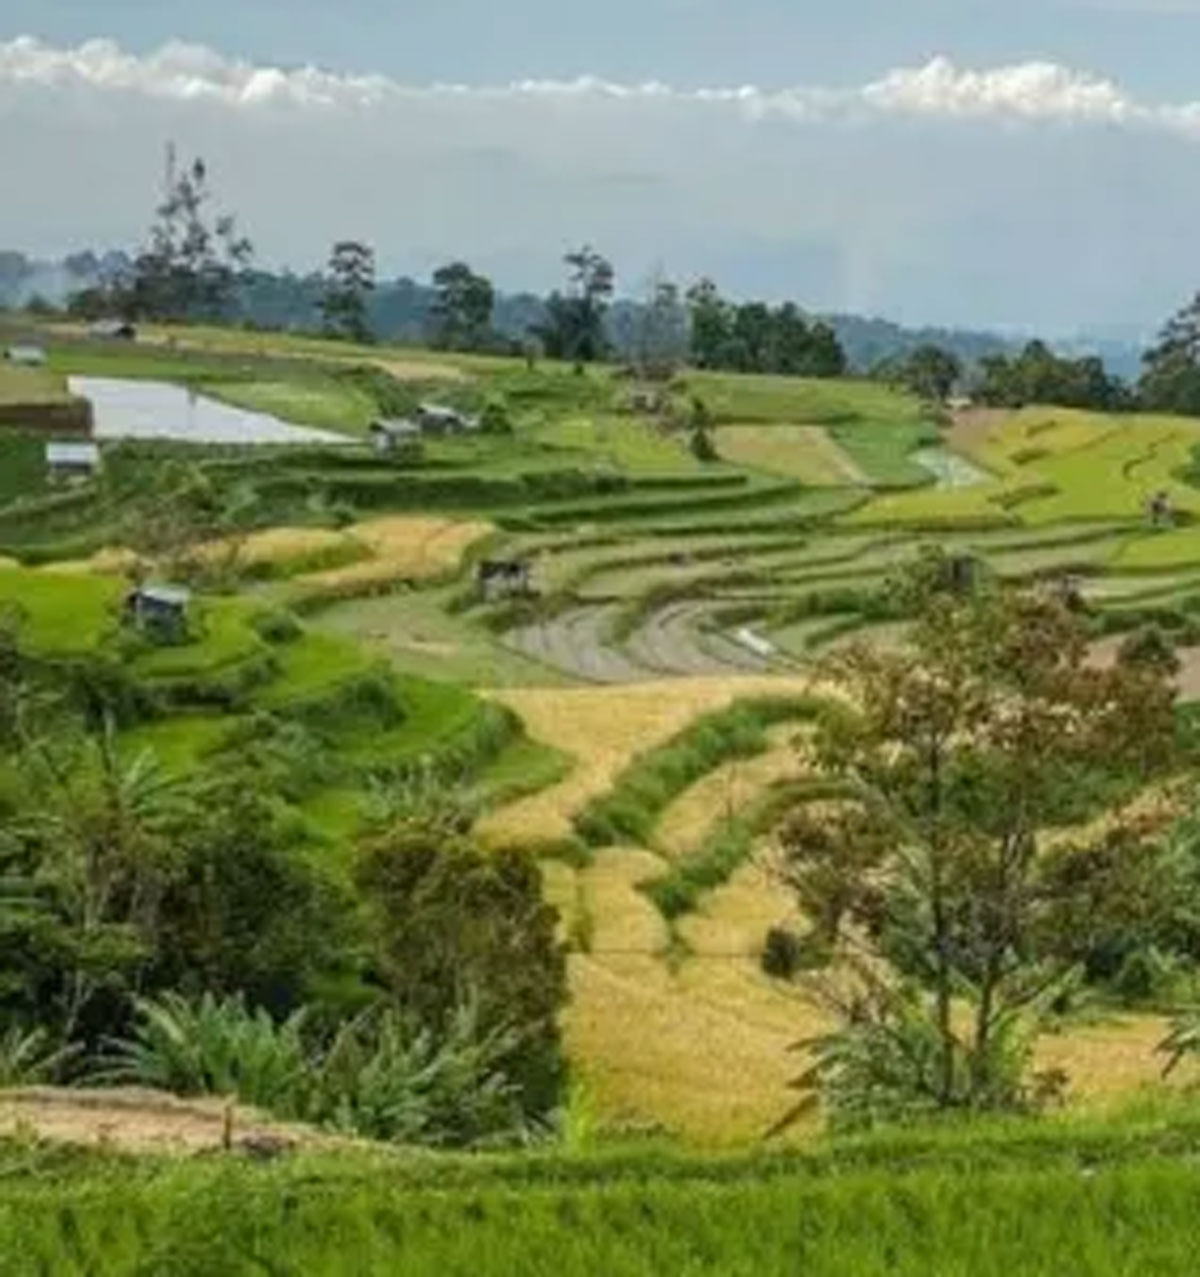 Menyelami Keajaiban Alam: Tiga Desa Terpilih di Sumatera Barat yang Memukau Jiwa